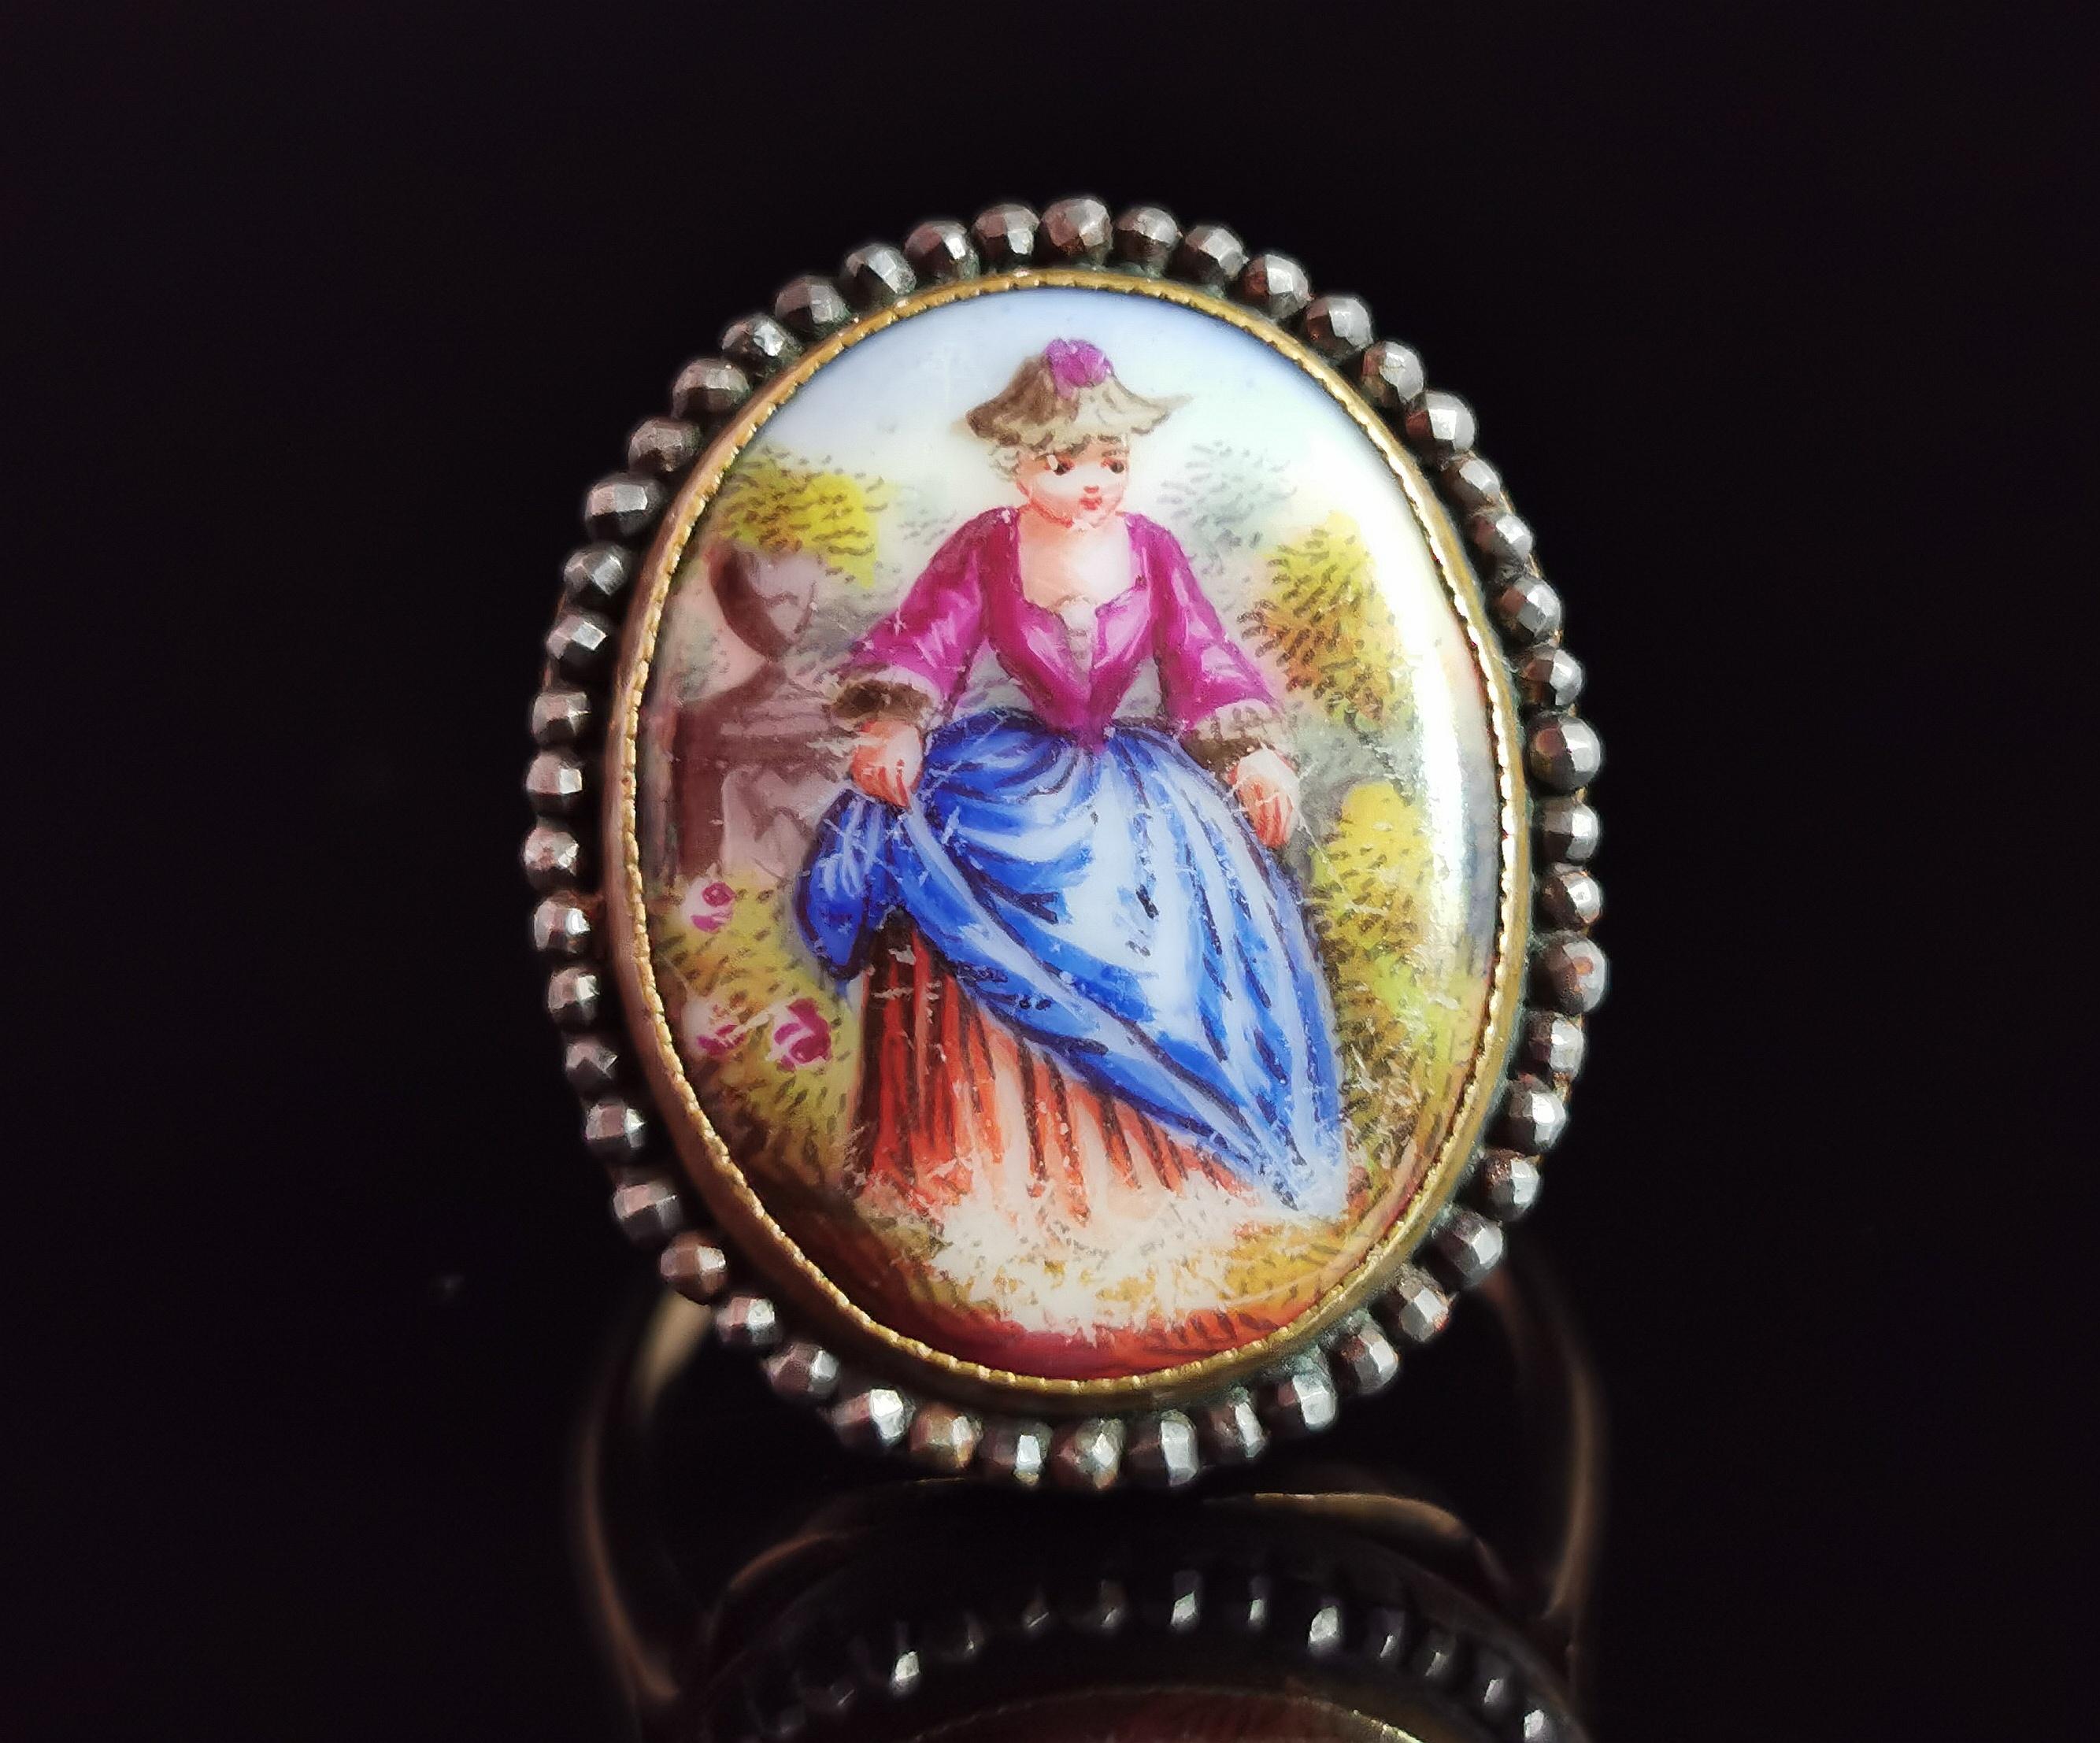 Eine hervorragende antike 19. Jahrhundert Porträt Miniatur-Ring.

Ein winziges, von Hand emailliertes Porträt einer Dame im Profil in einer Gartenlandschaft. Das Porträt wurde auf Perlmutt emailliert und ist durch die Rückseite des Rings zu